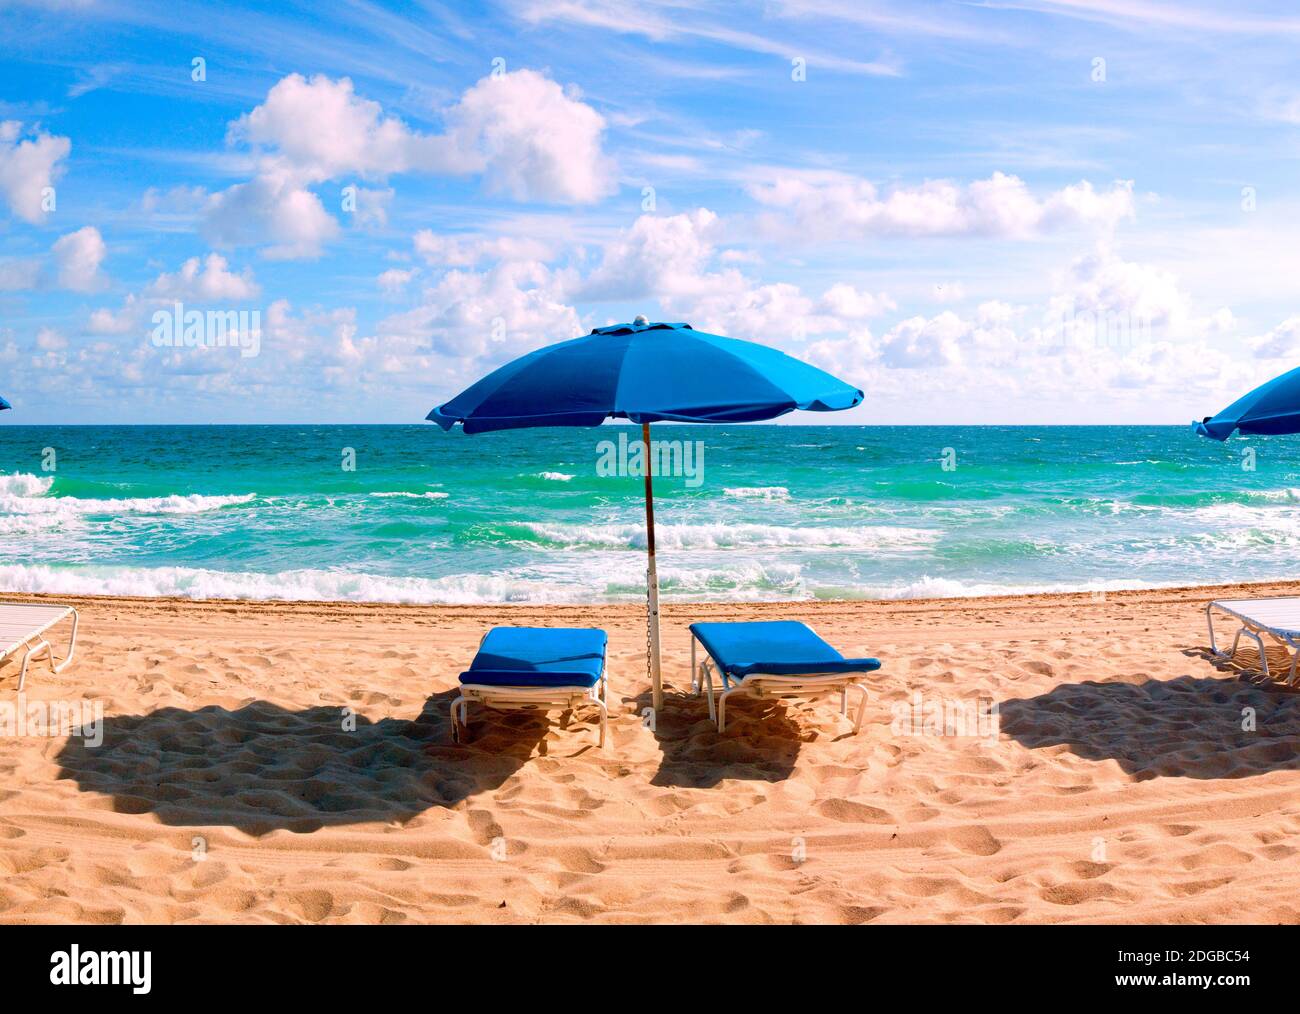 Tropischer Sonnenschirm am Strand Stockbild - Bild von ferien, blau:  16445001